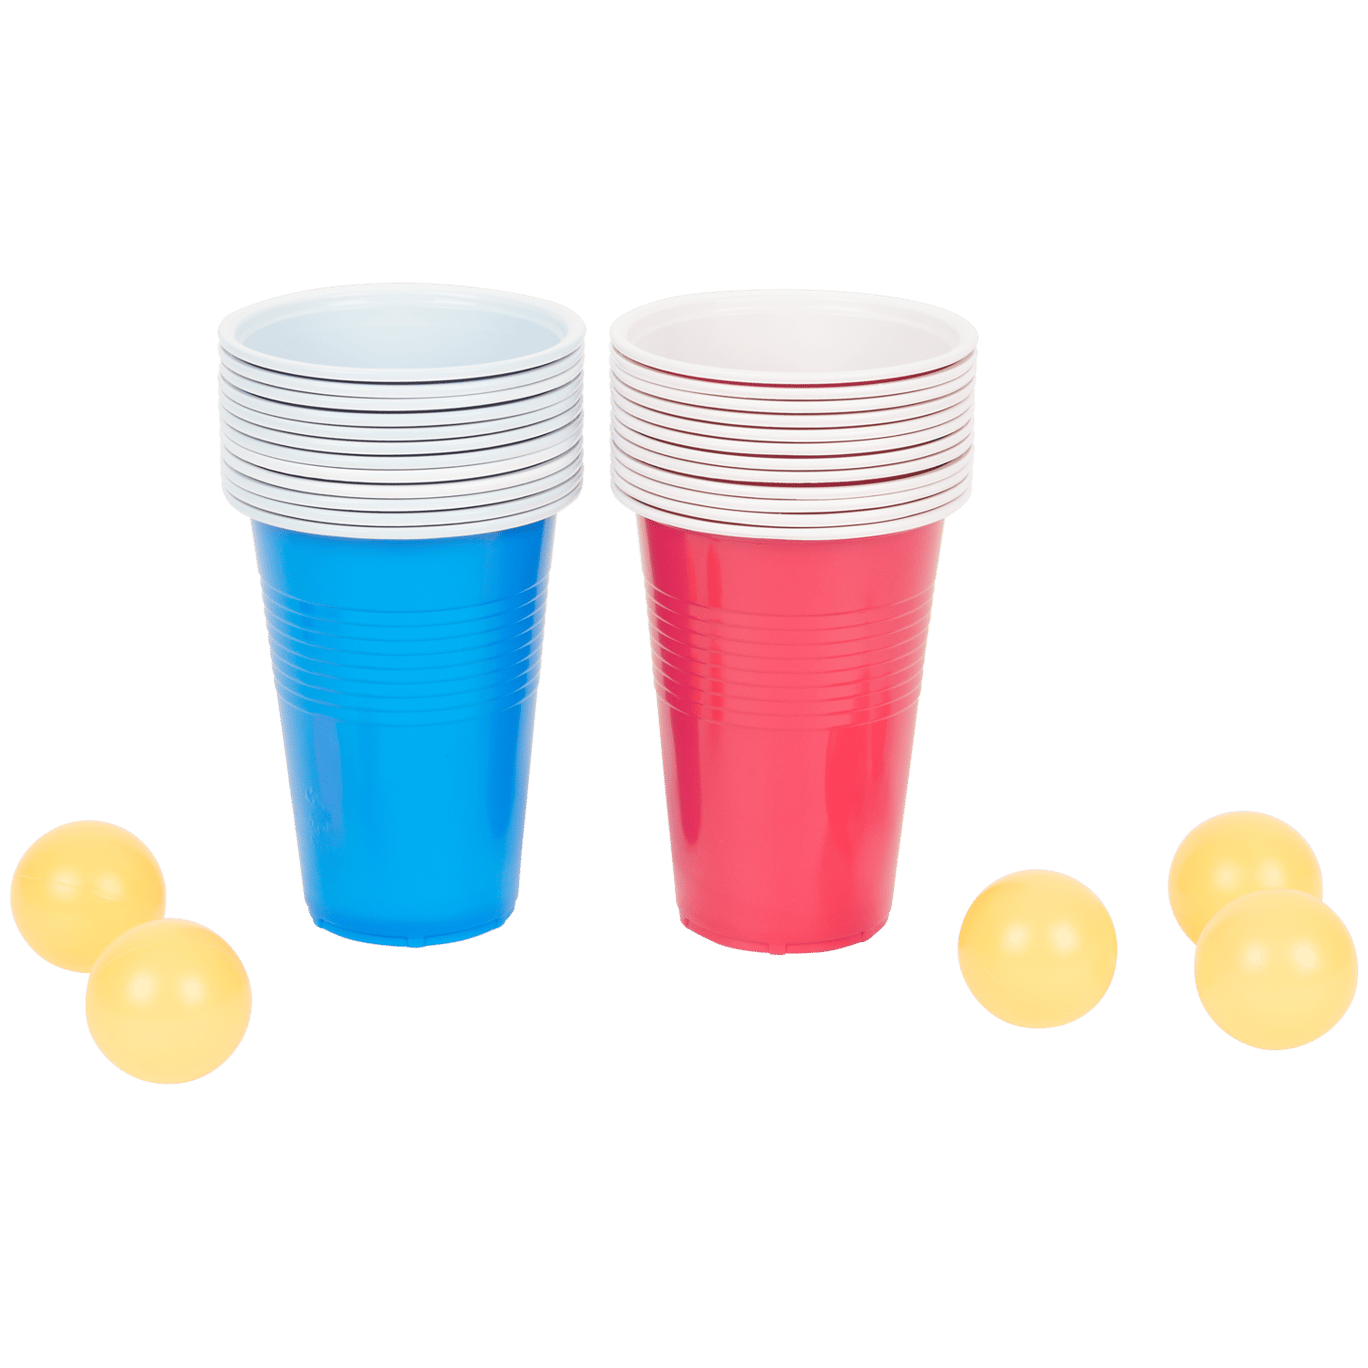  Beer Pong : Jeux Et Jouets